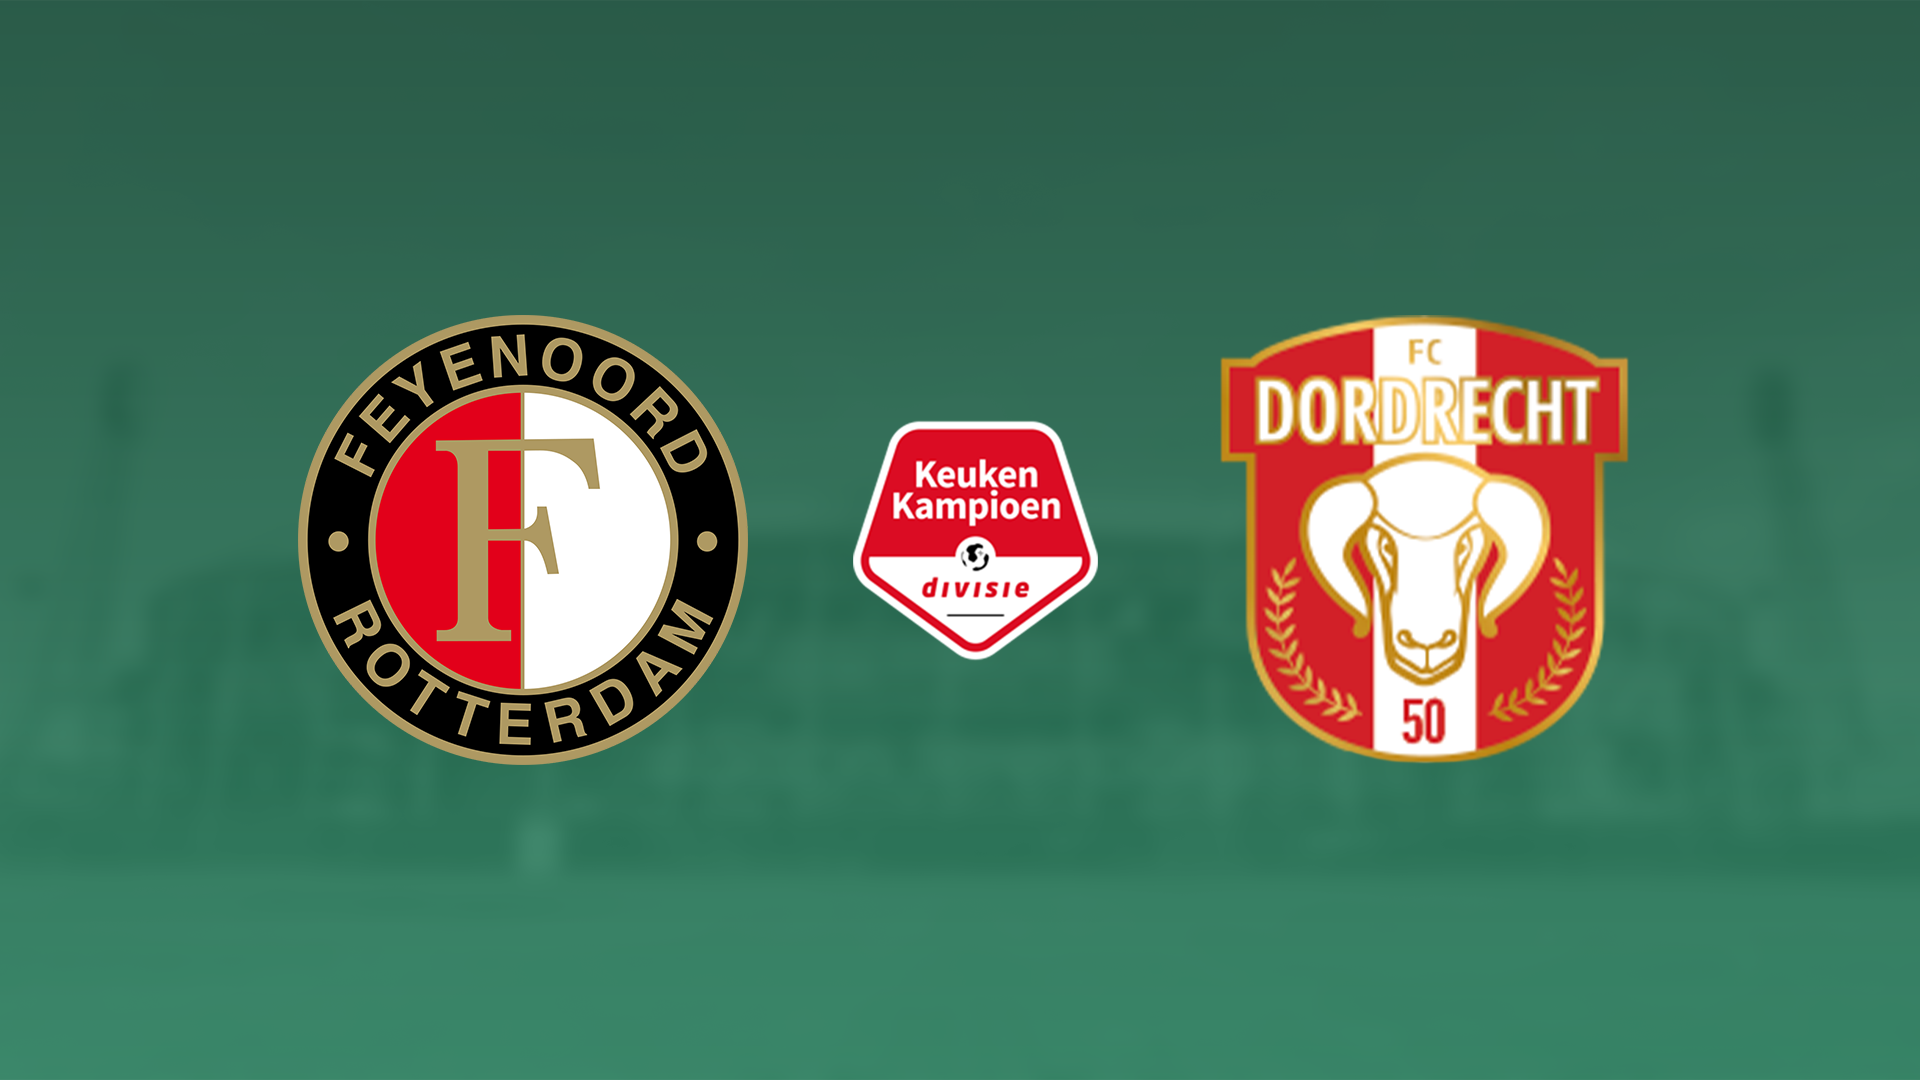 Nieuwe alliantie Feyenoord & FC Dordrecht: It's happening!